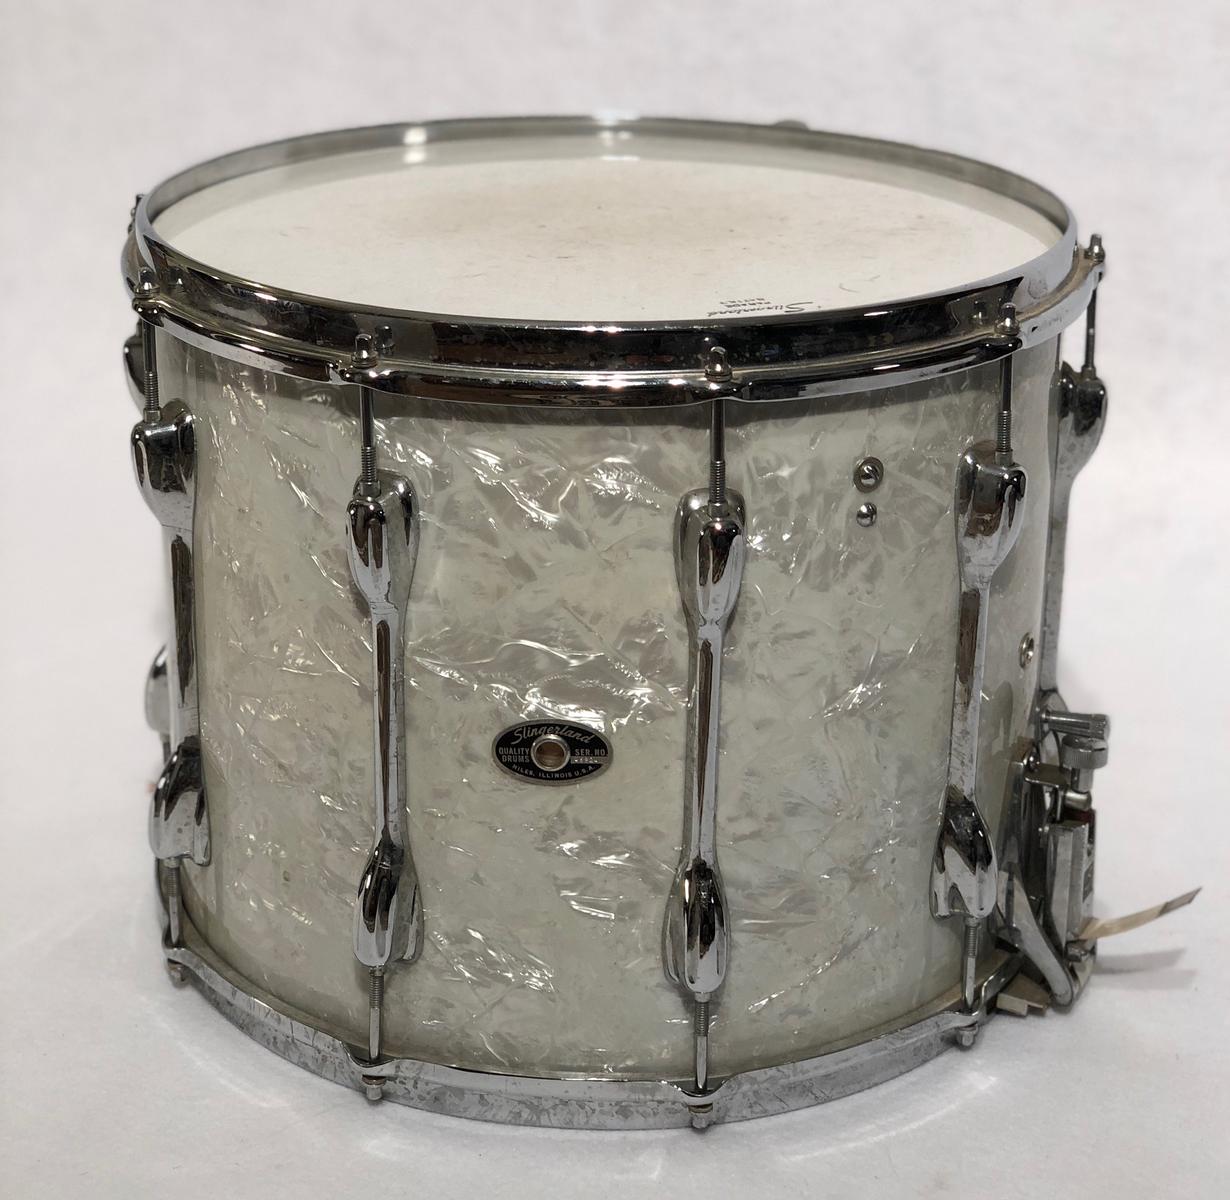 Gene Krupa's parade drum, Gene Krupa's snare drums, Gene Krupa's collection